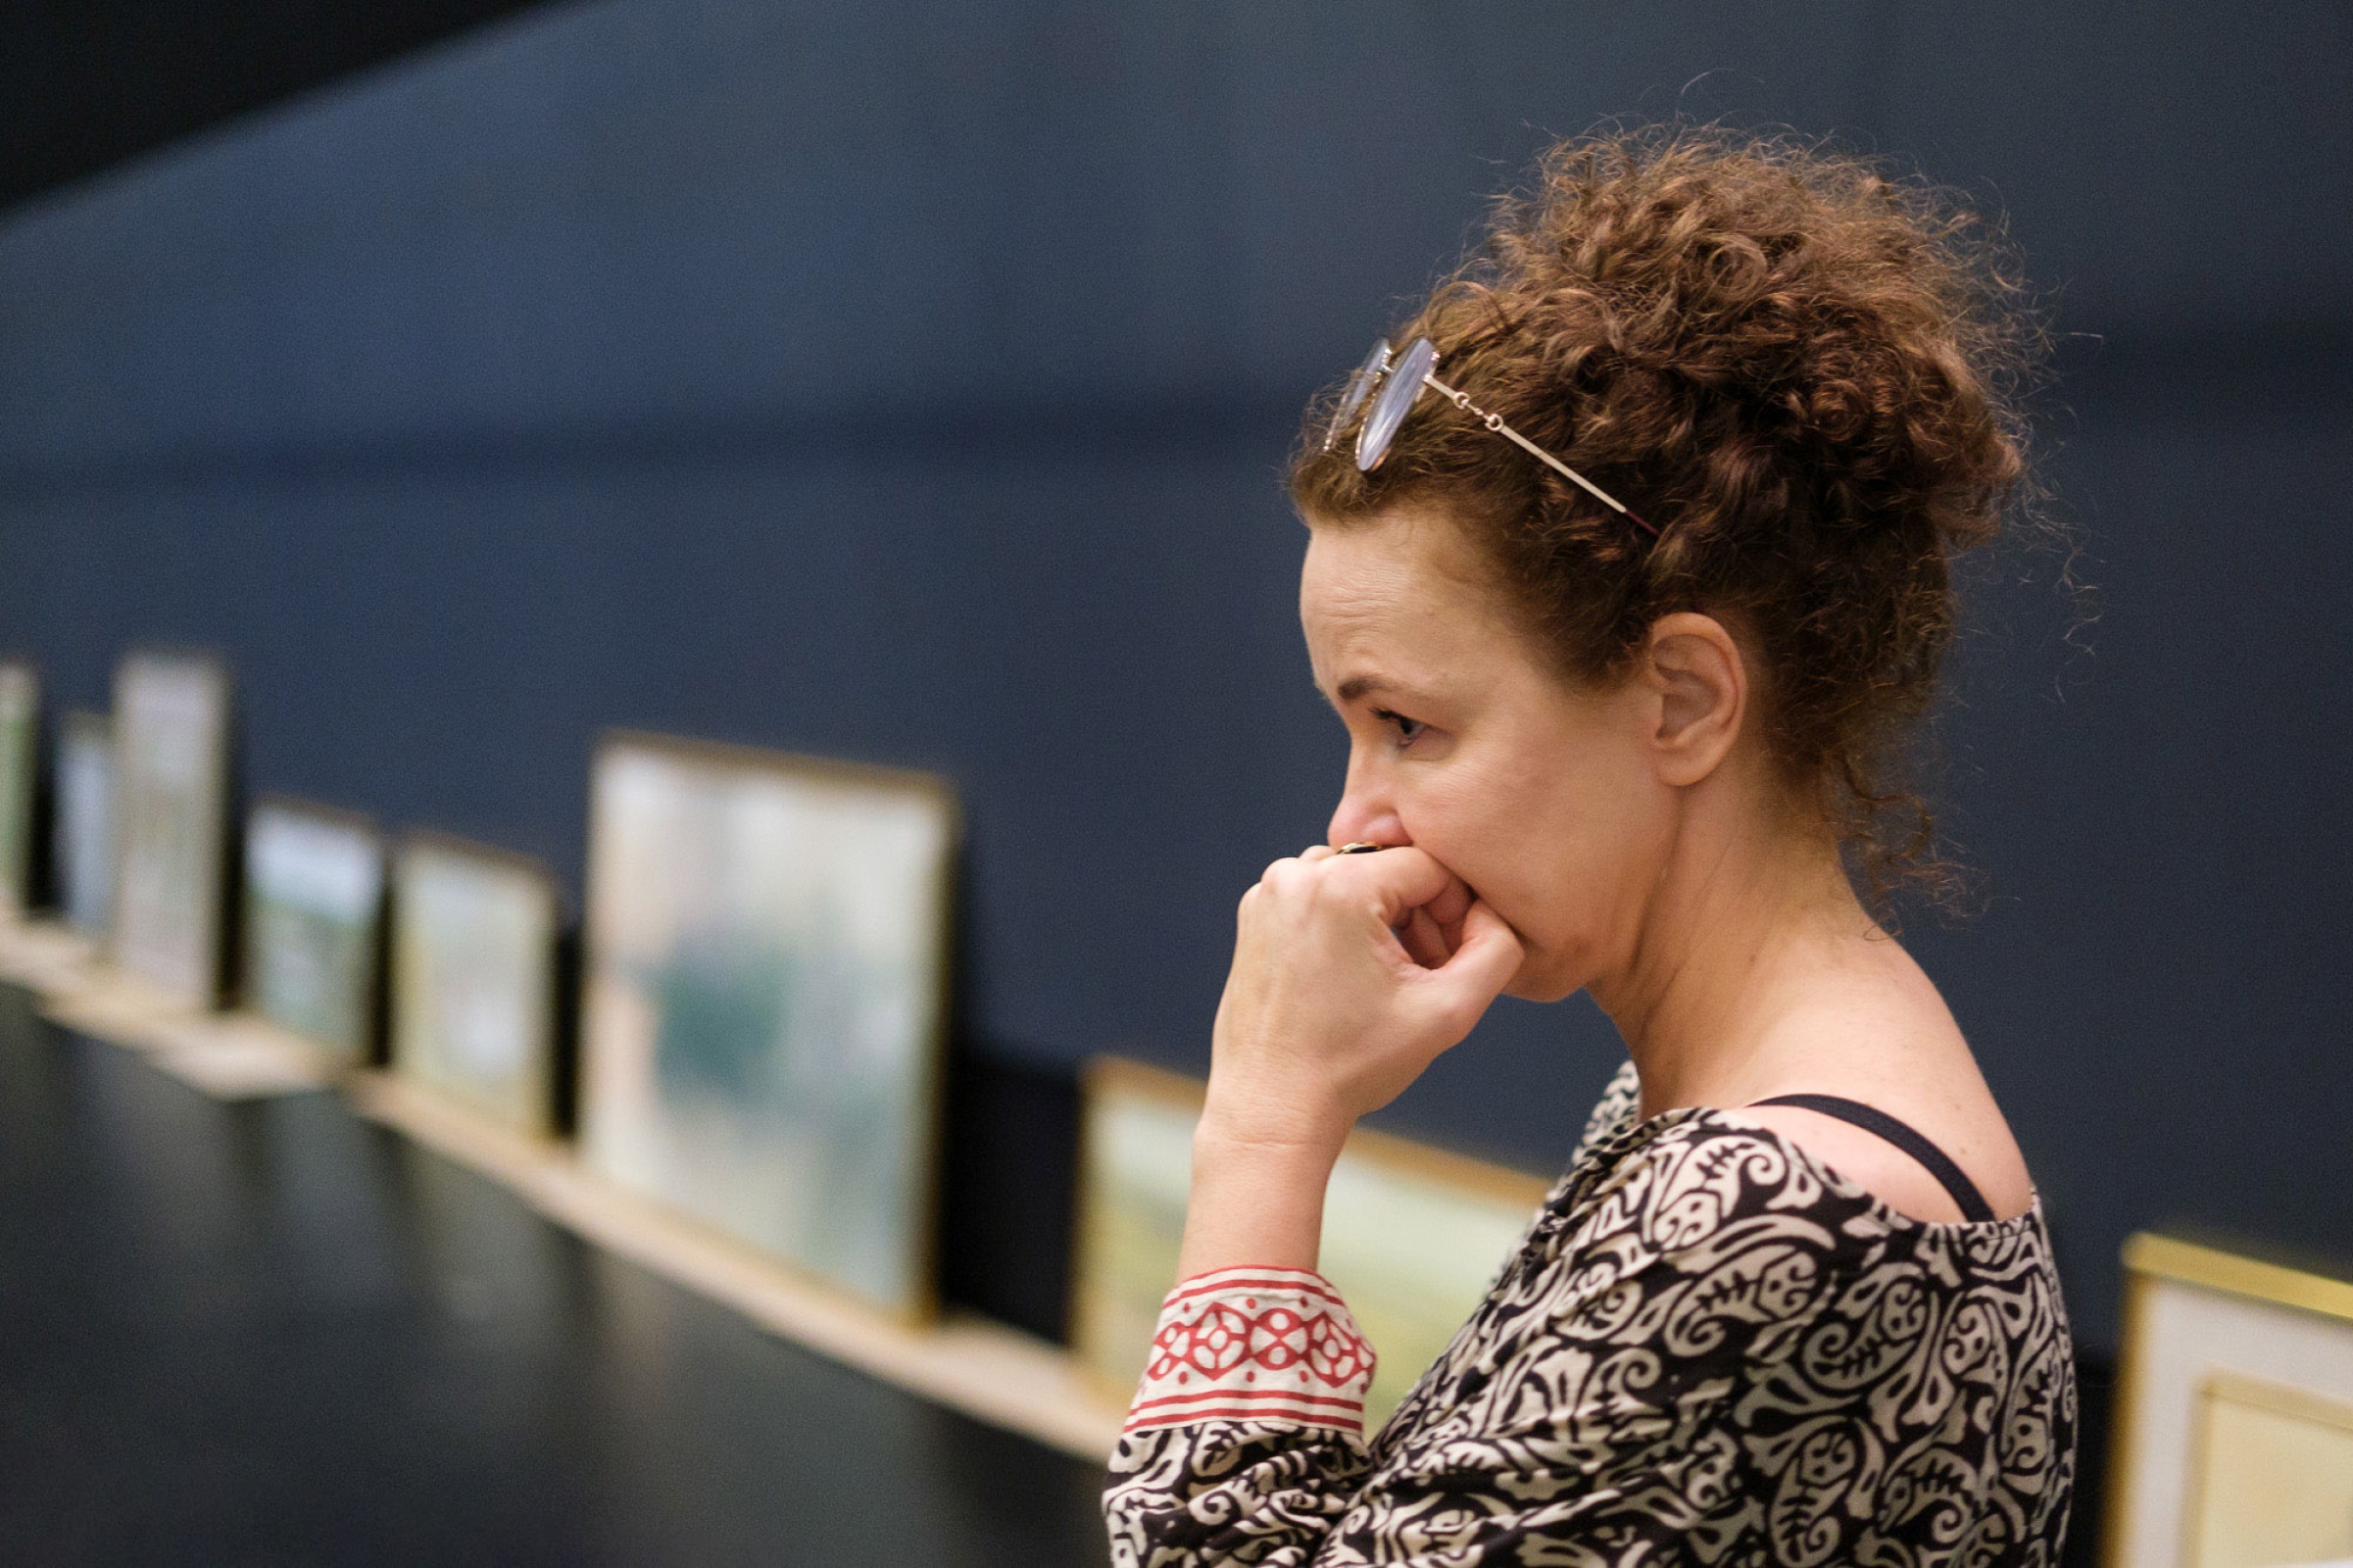 reżyserka i kuratorka wystawy Agata Duda-Gracz przygląda się wystawie "Chopinowi Duda-Gracz" w Muzeum Śląskim w Katowicach